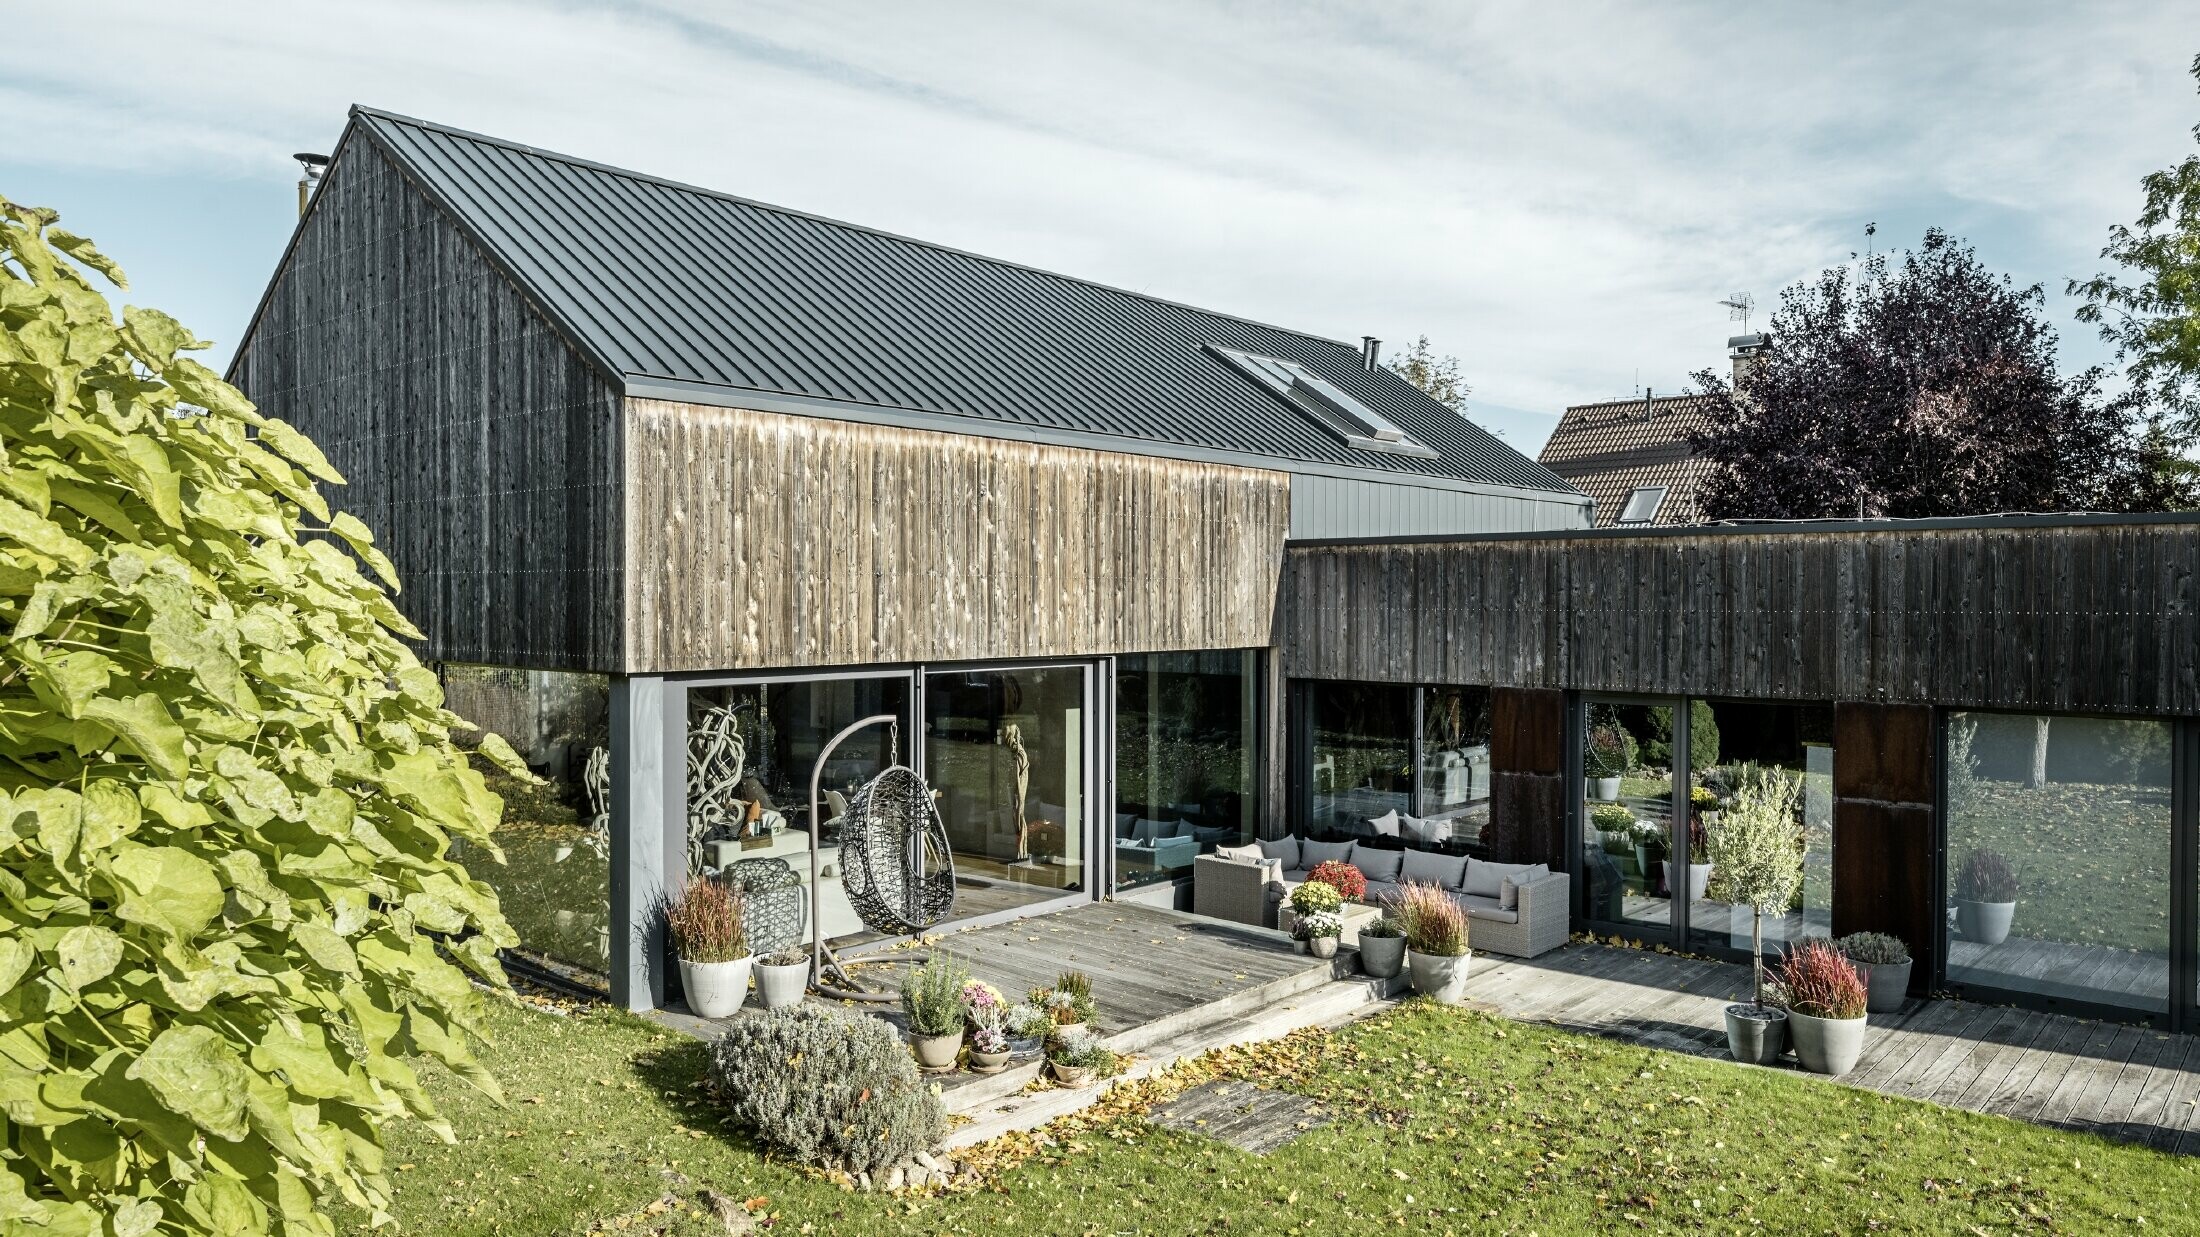 Rodinný dom so sedlovou strechou, zakrytou s dvojitou stojatou drážkou PREFALZ vo farebnom vyhotovení antracitová a zvetranou drevenou fasádou. S peknou drevenou terasou a veľkými okennými plochami na prízemí.